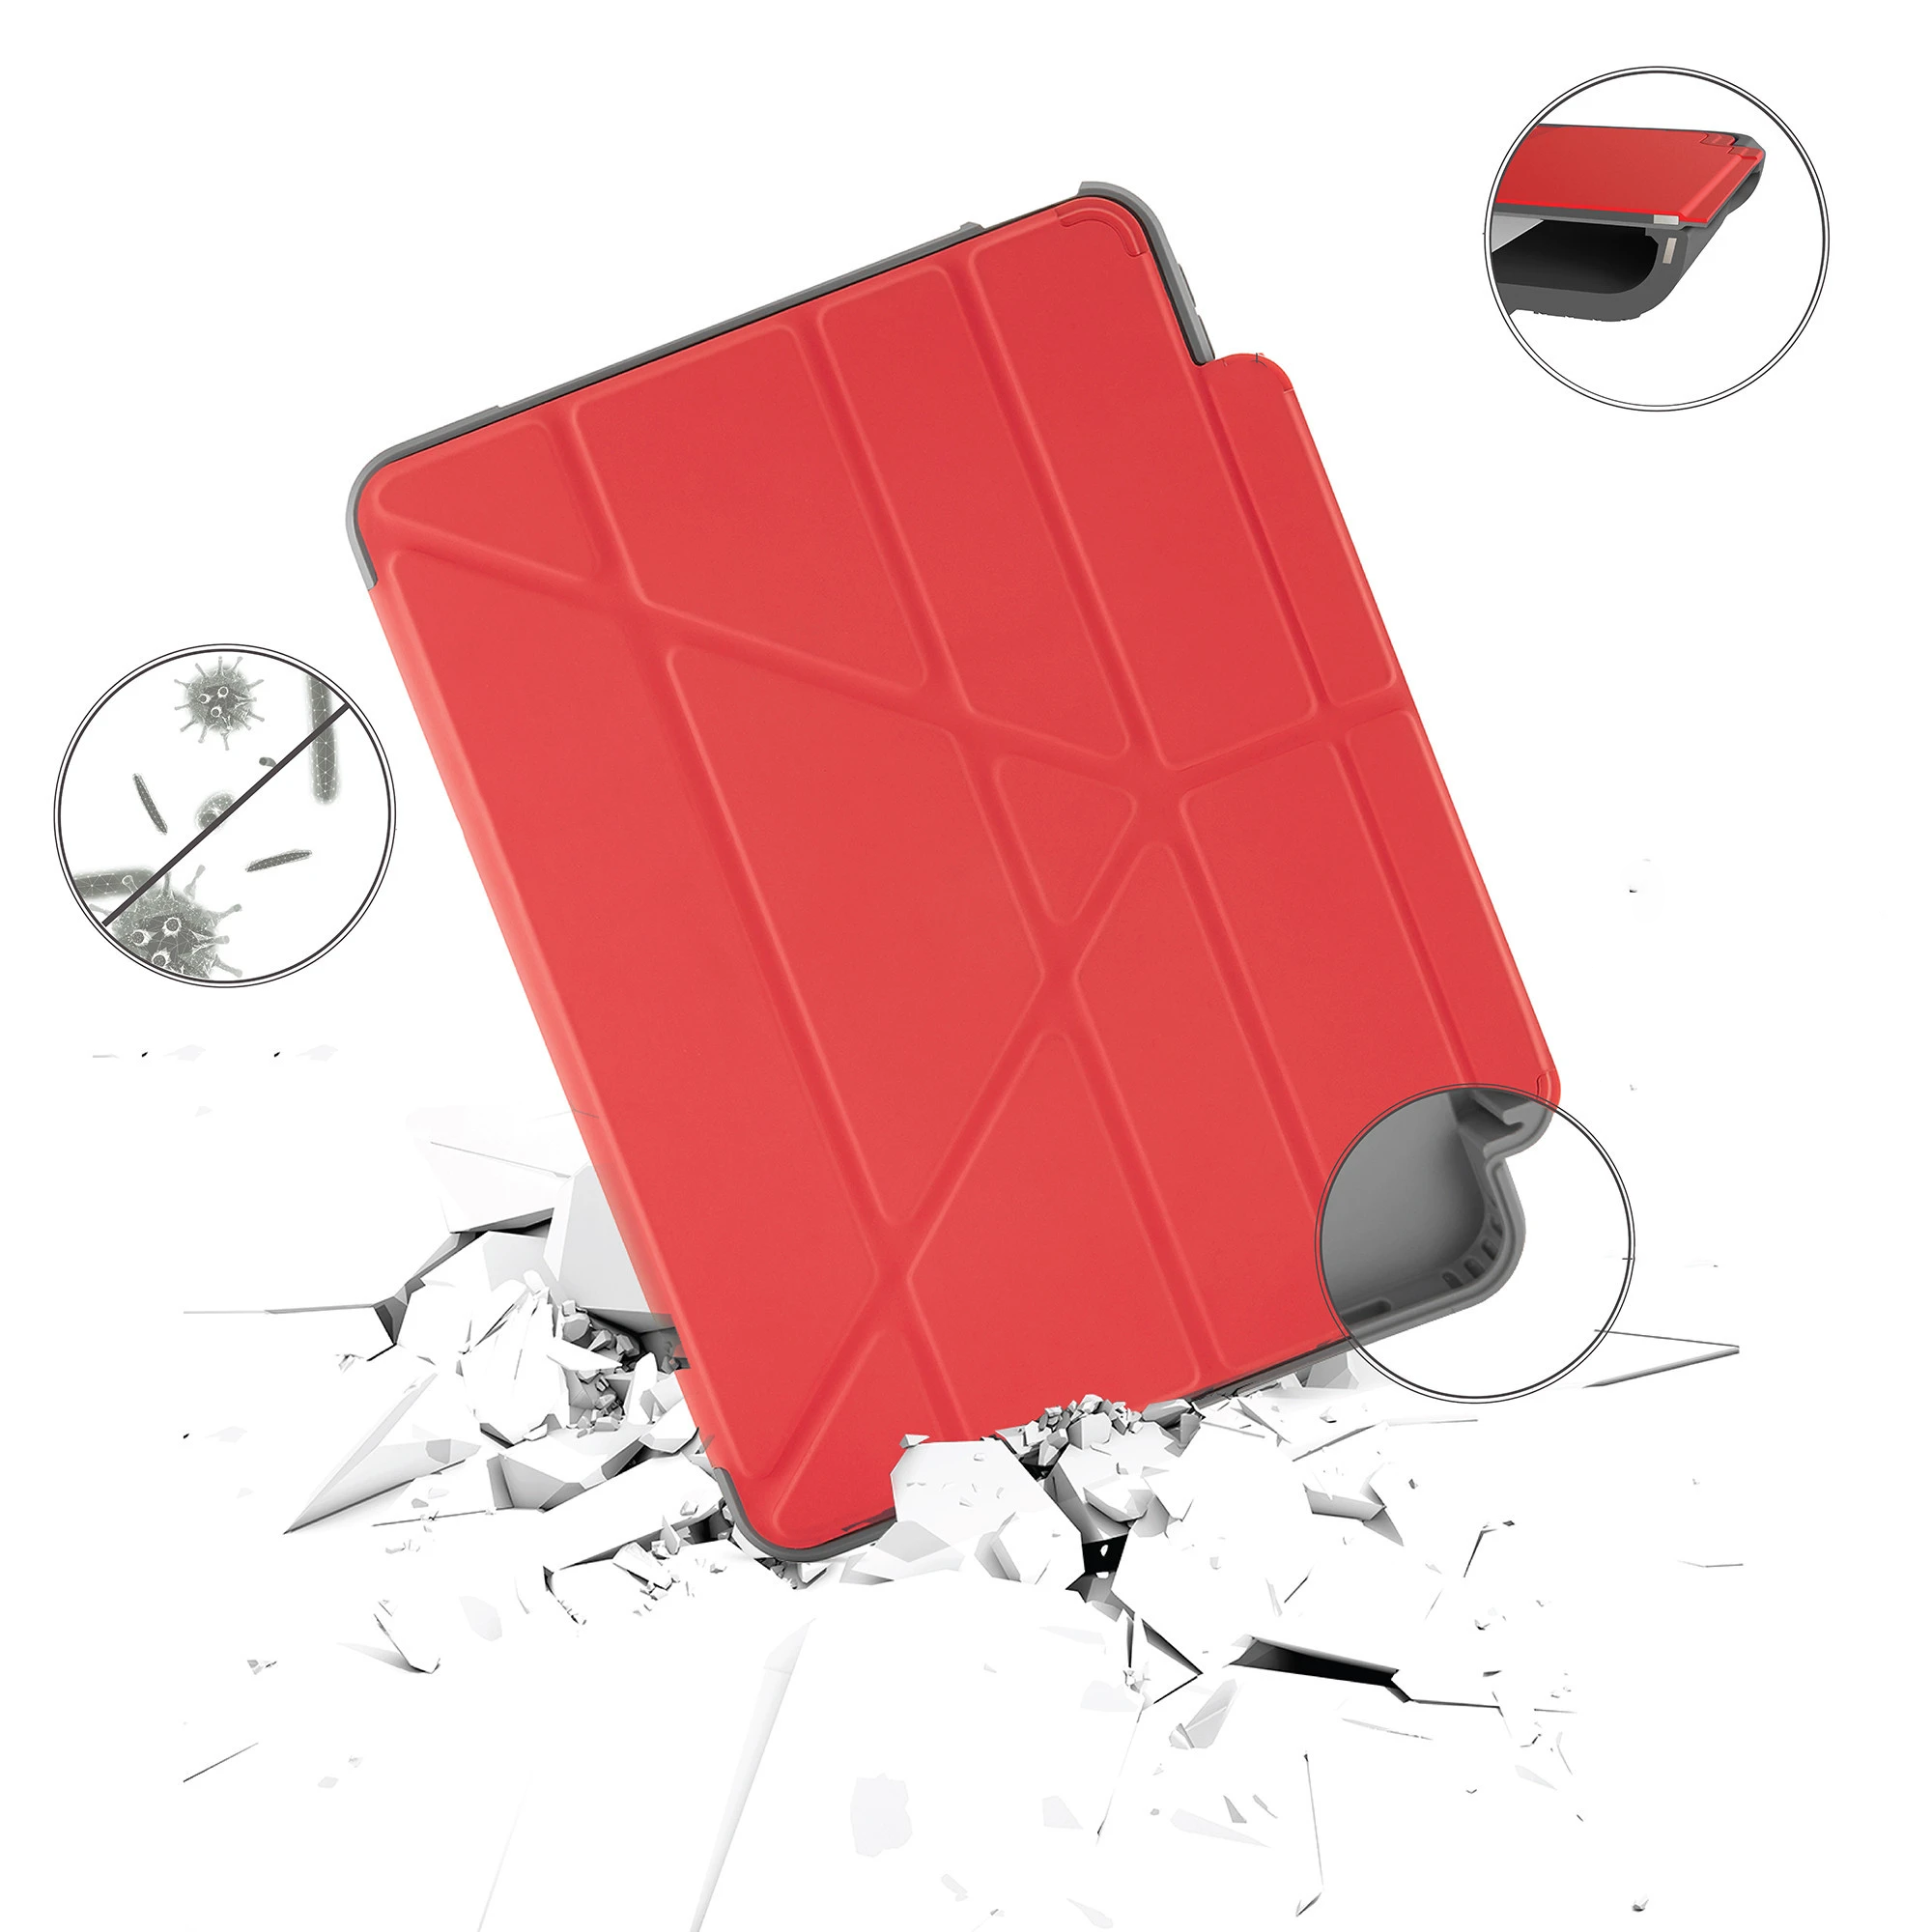 Pipetto Origami No2 Pencil Shield Apple iPad Air 10.9 2020 4 Gen (red)